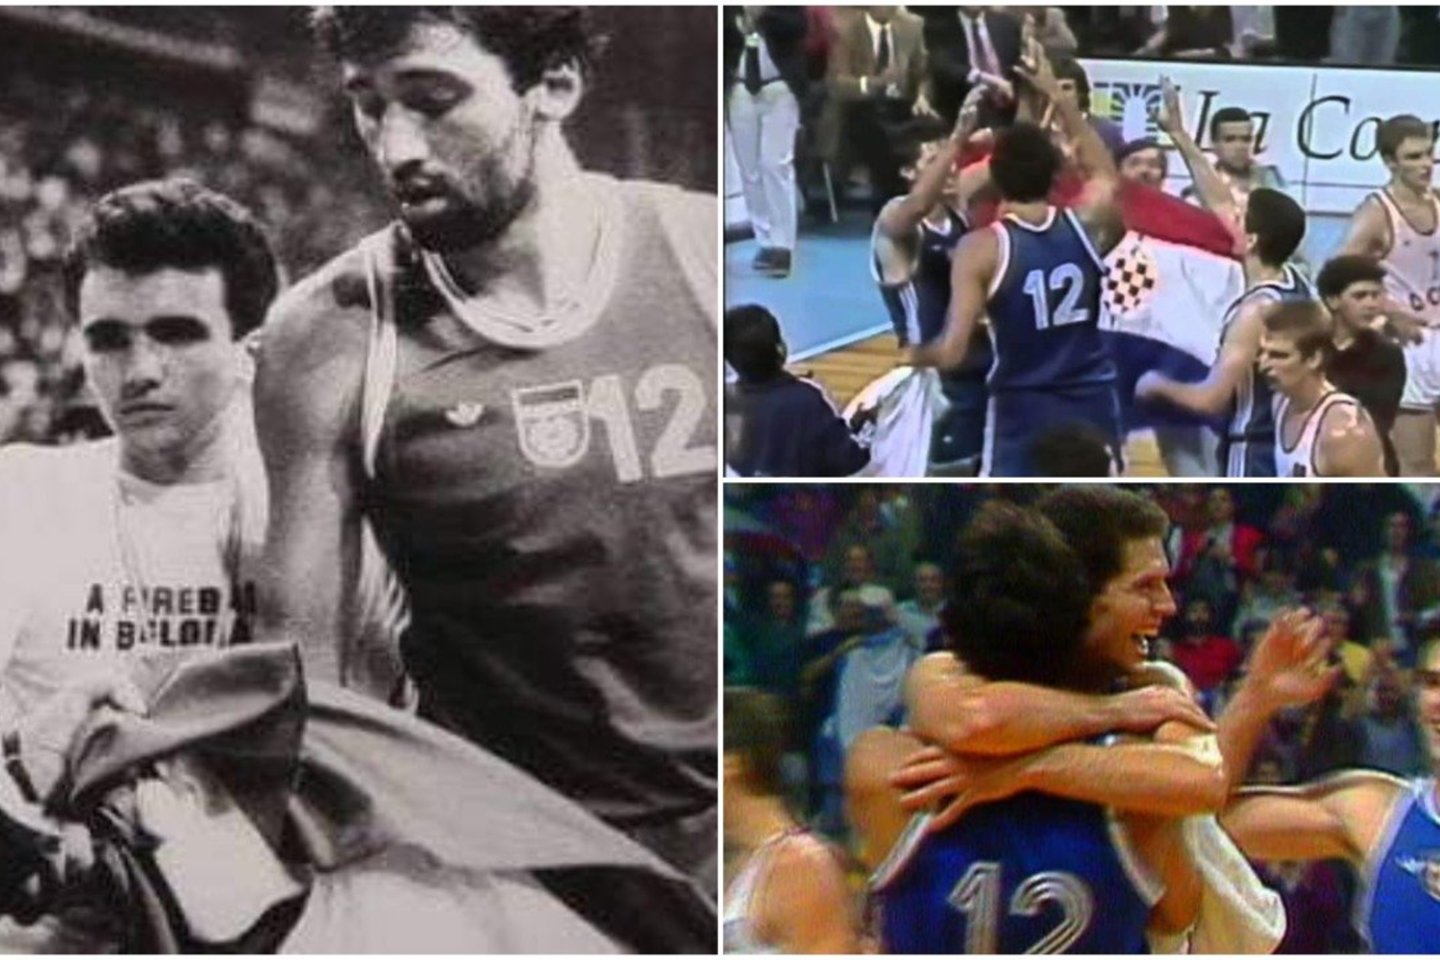  Karo aukomis tapę krepšininkai: V. Divaco ir D. Petrovičiaus draugystę nutraukė pergalės džiaugsmas.<br> Youtube stop kadras.